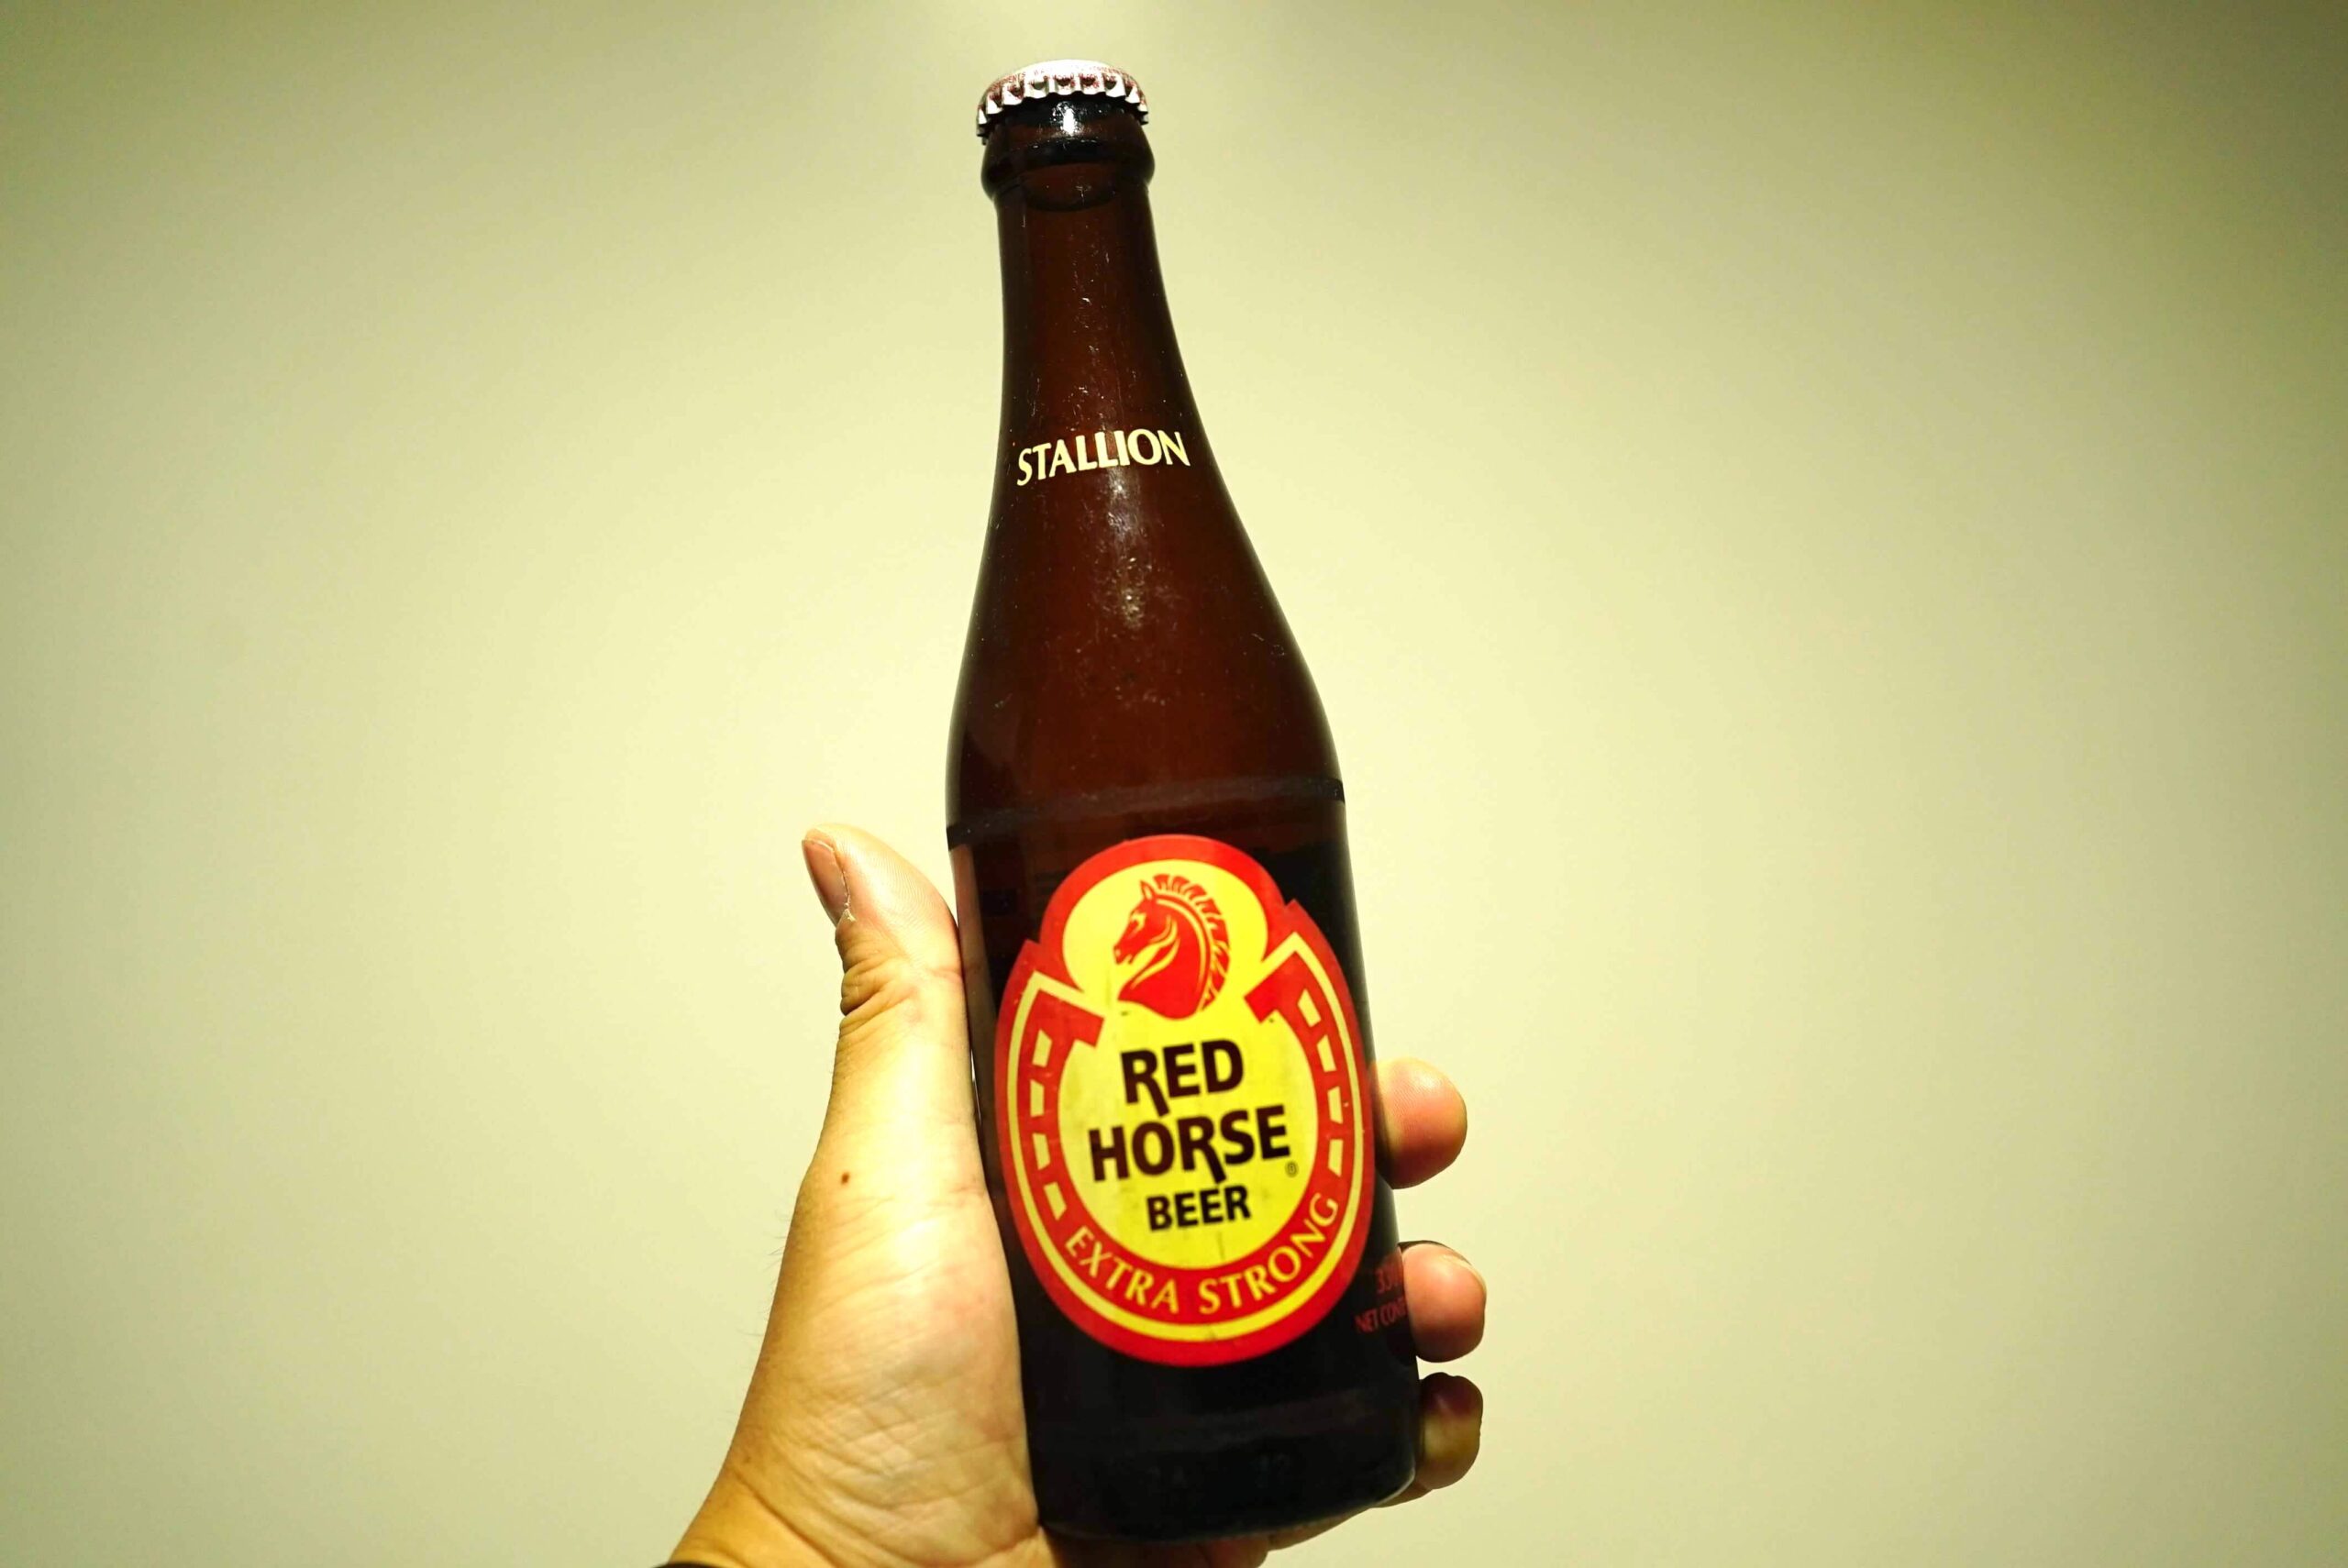 ed Horse Beer EXTRA STRONG（レッドホース・ビア・エキストラストロング）フィリピンのオススメビール５種類を飲み比べてみた【サンミゲル/レッドホース】